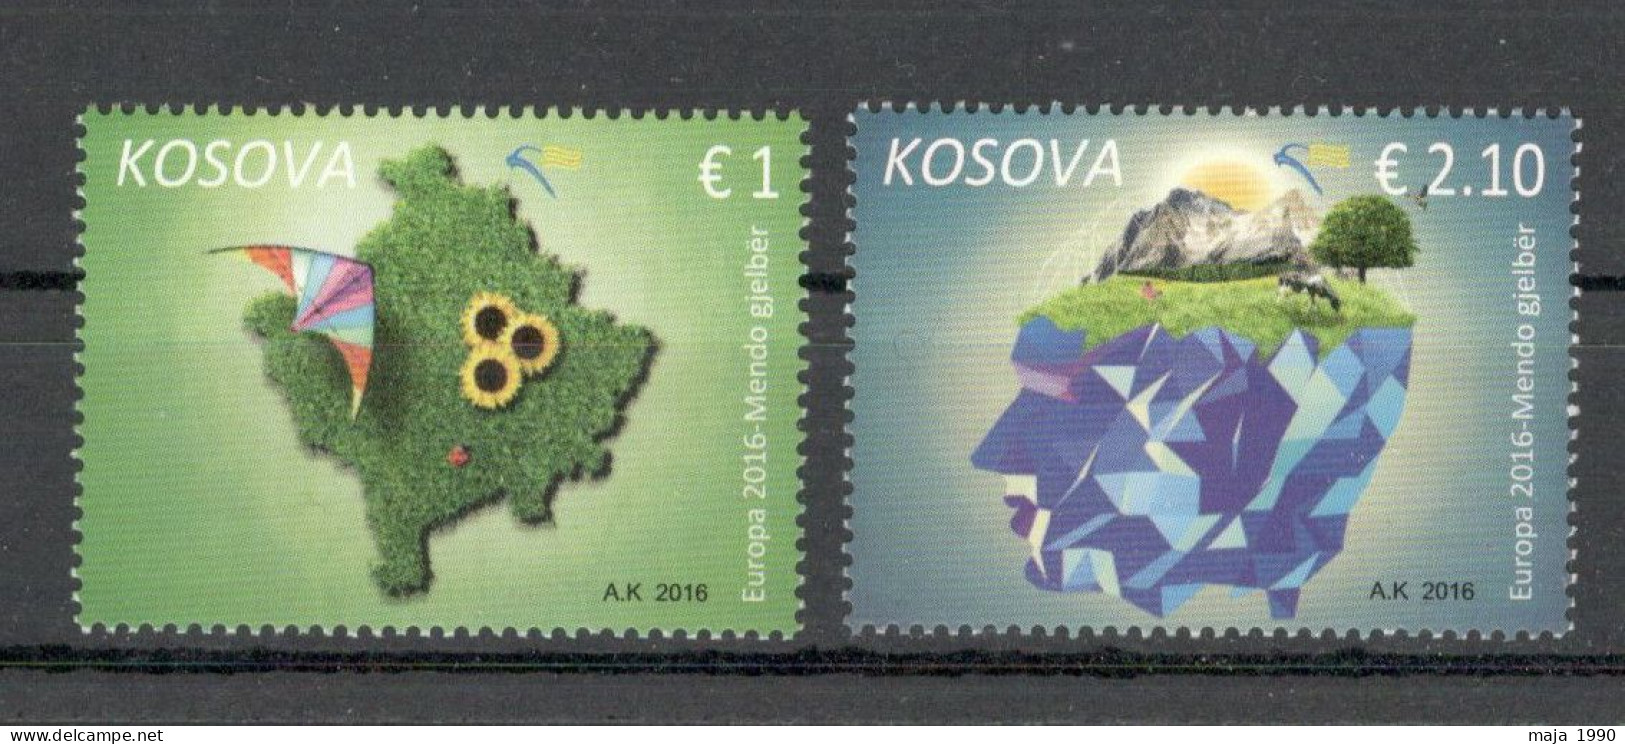 KOSOVO - MNH SET EUROPA CEPT - 2016 - Kosovo